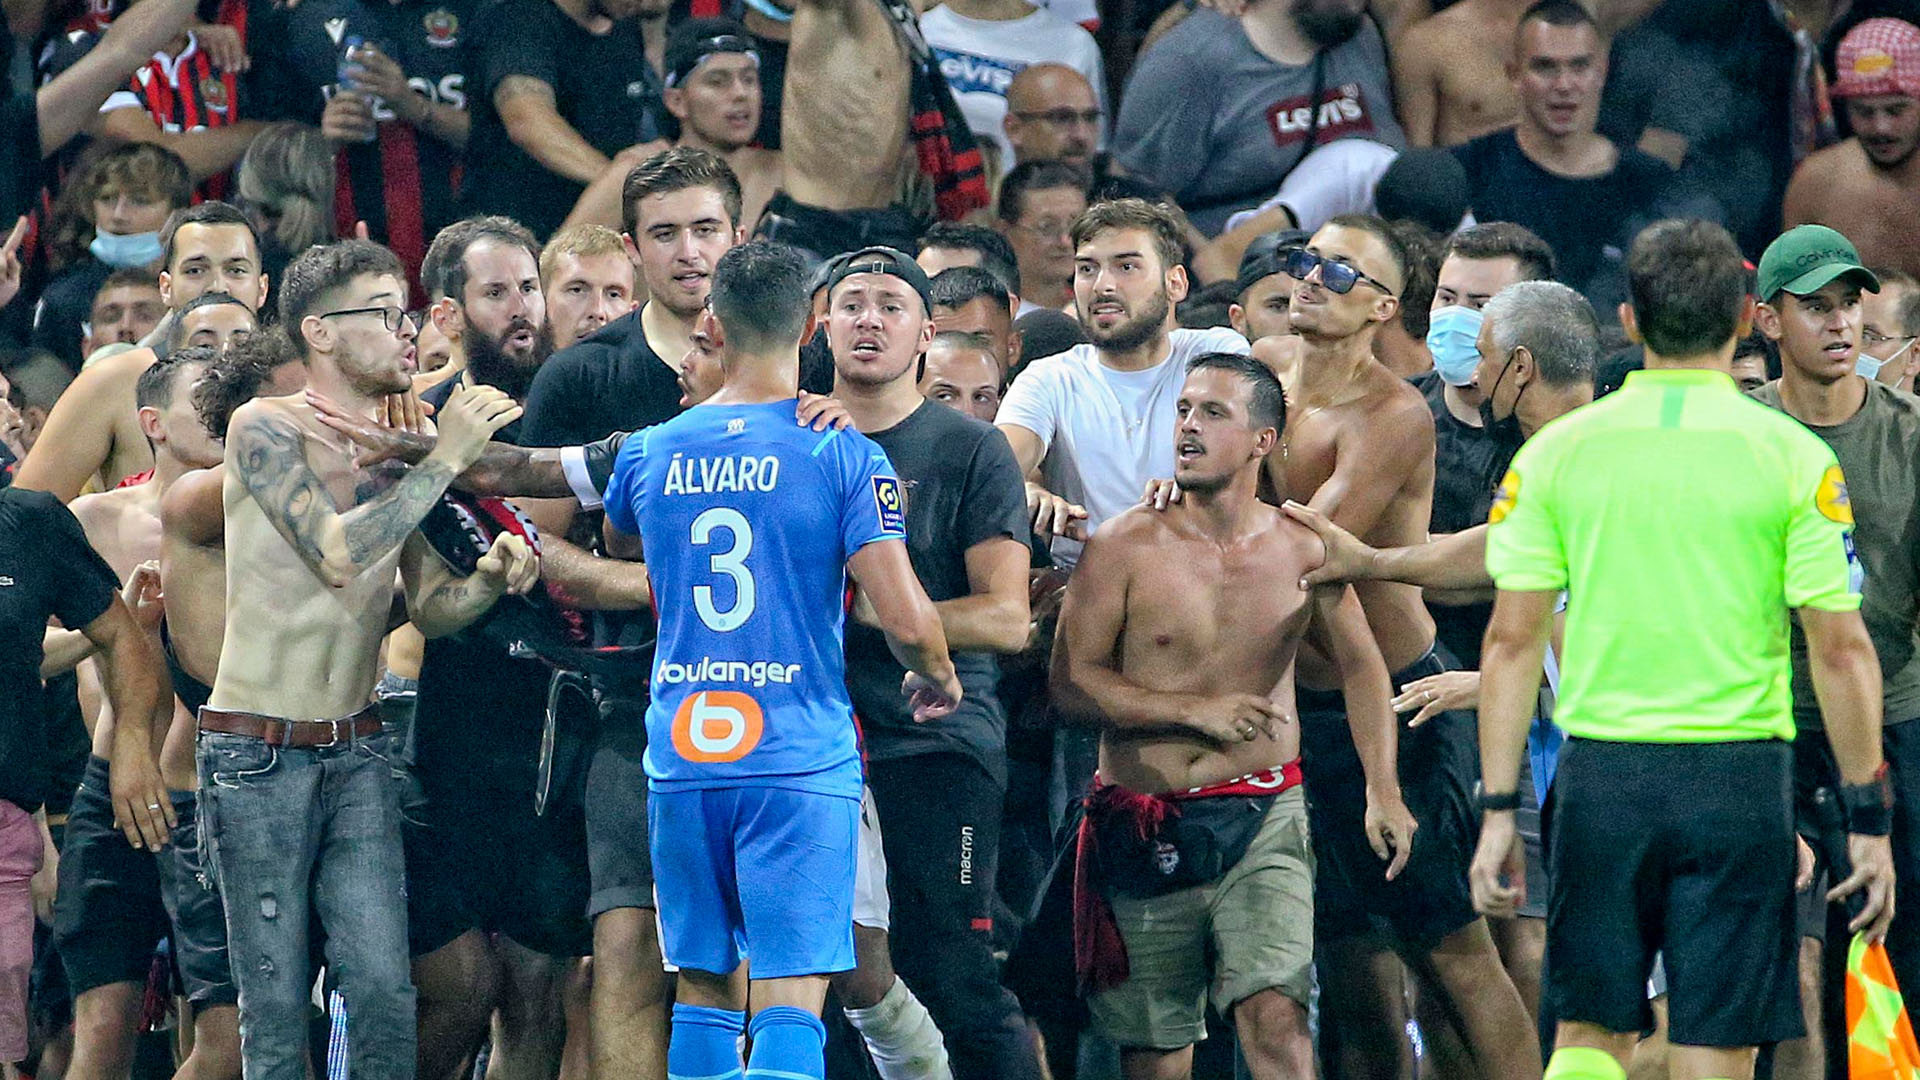 El objetivo es frenar la escalada de polarización y violencia que se ha acrecentado en el fútbol francés durante los últimos años.